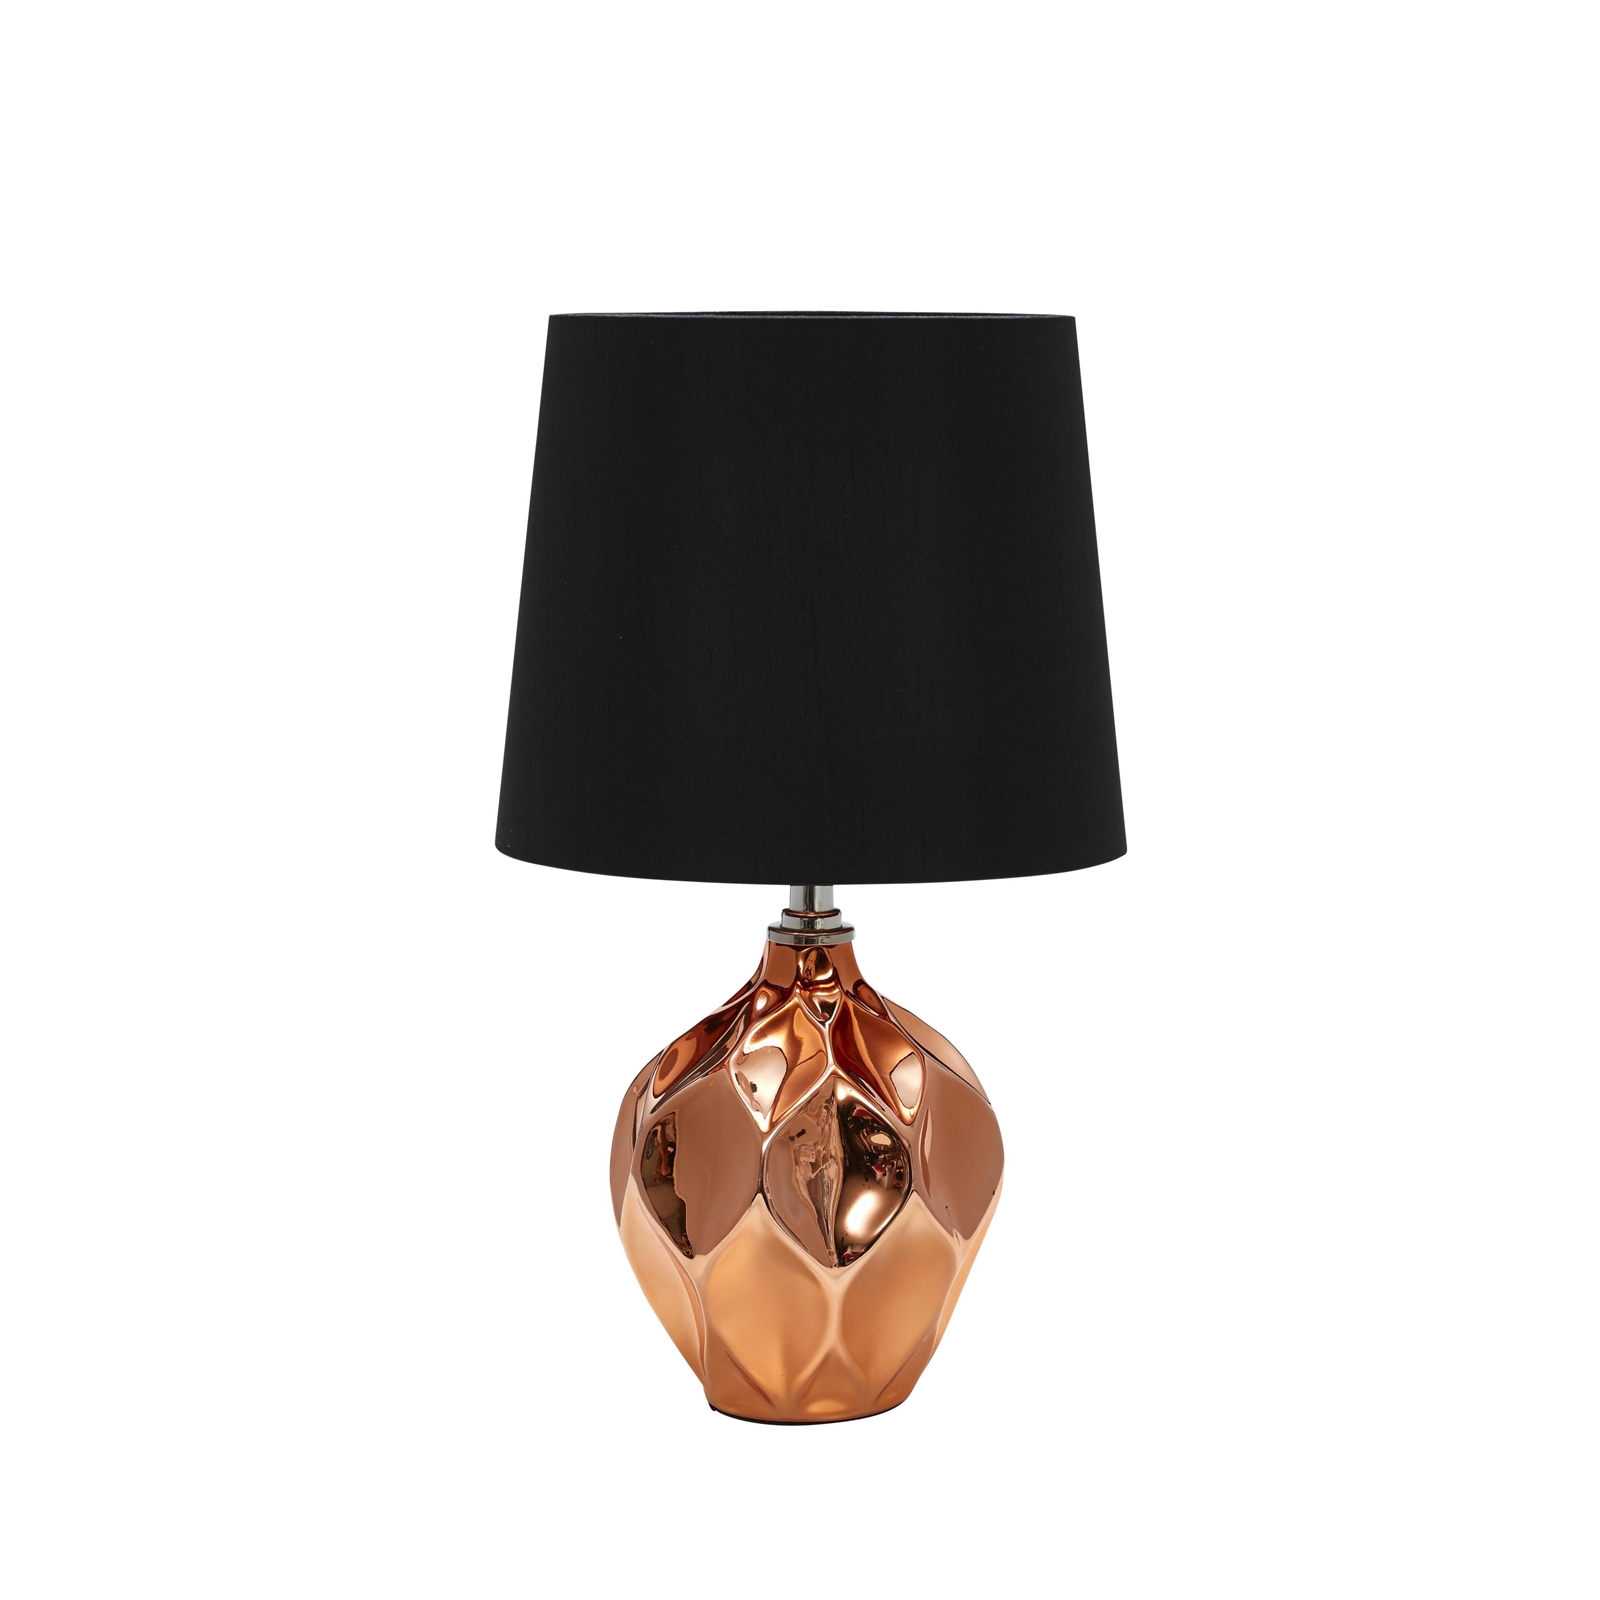 Home Design 44cm Brilla Table Lamp